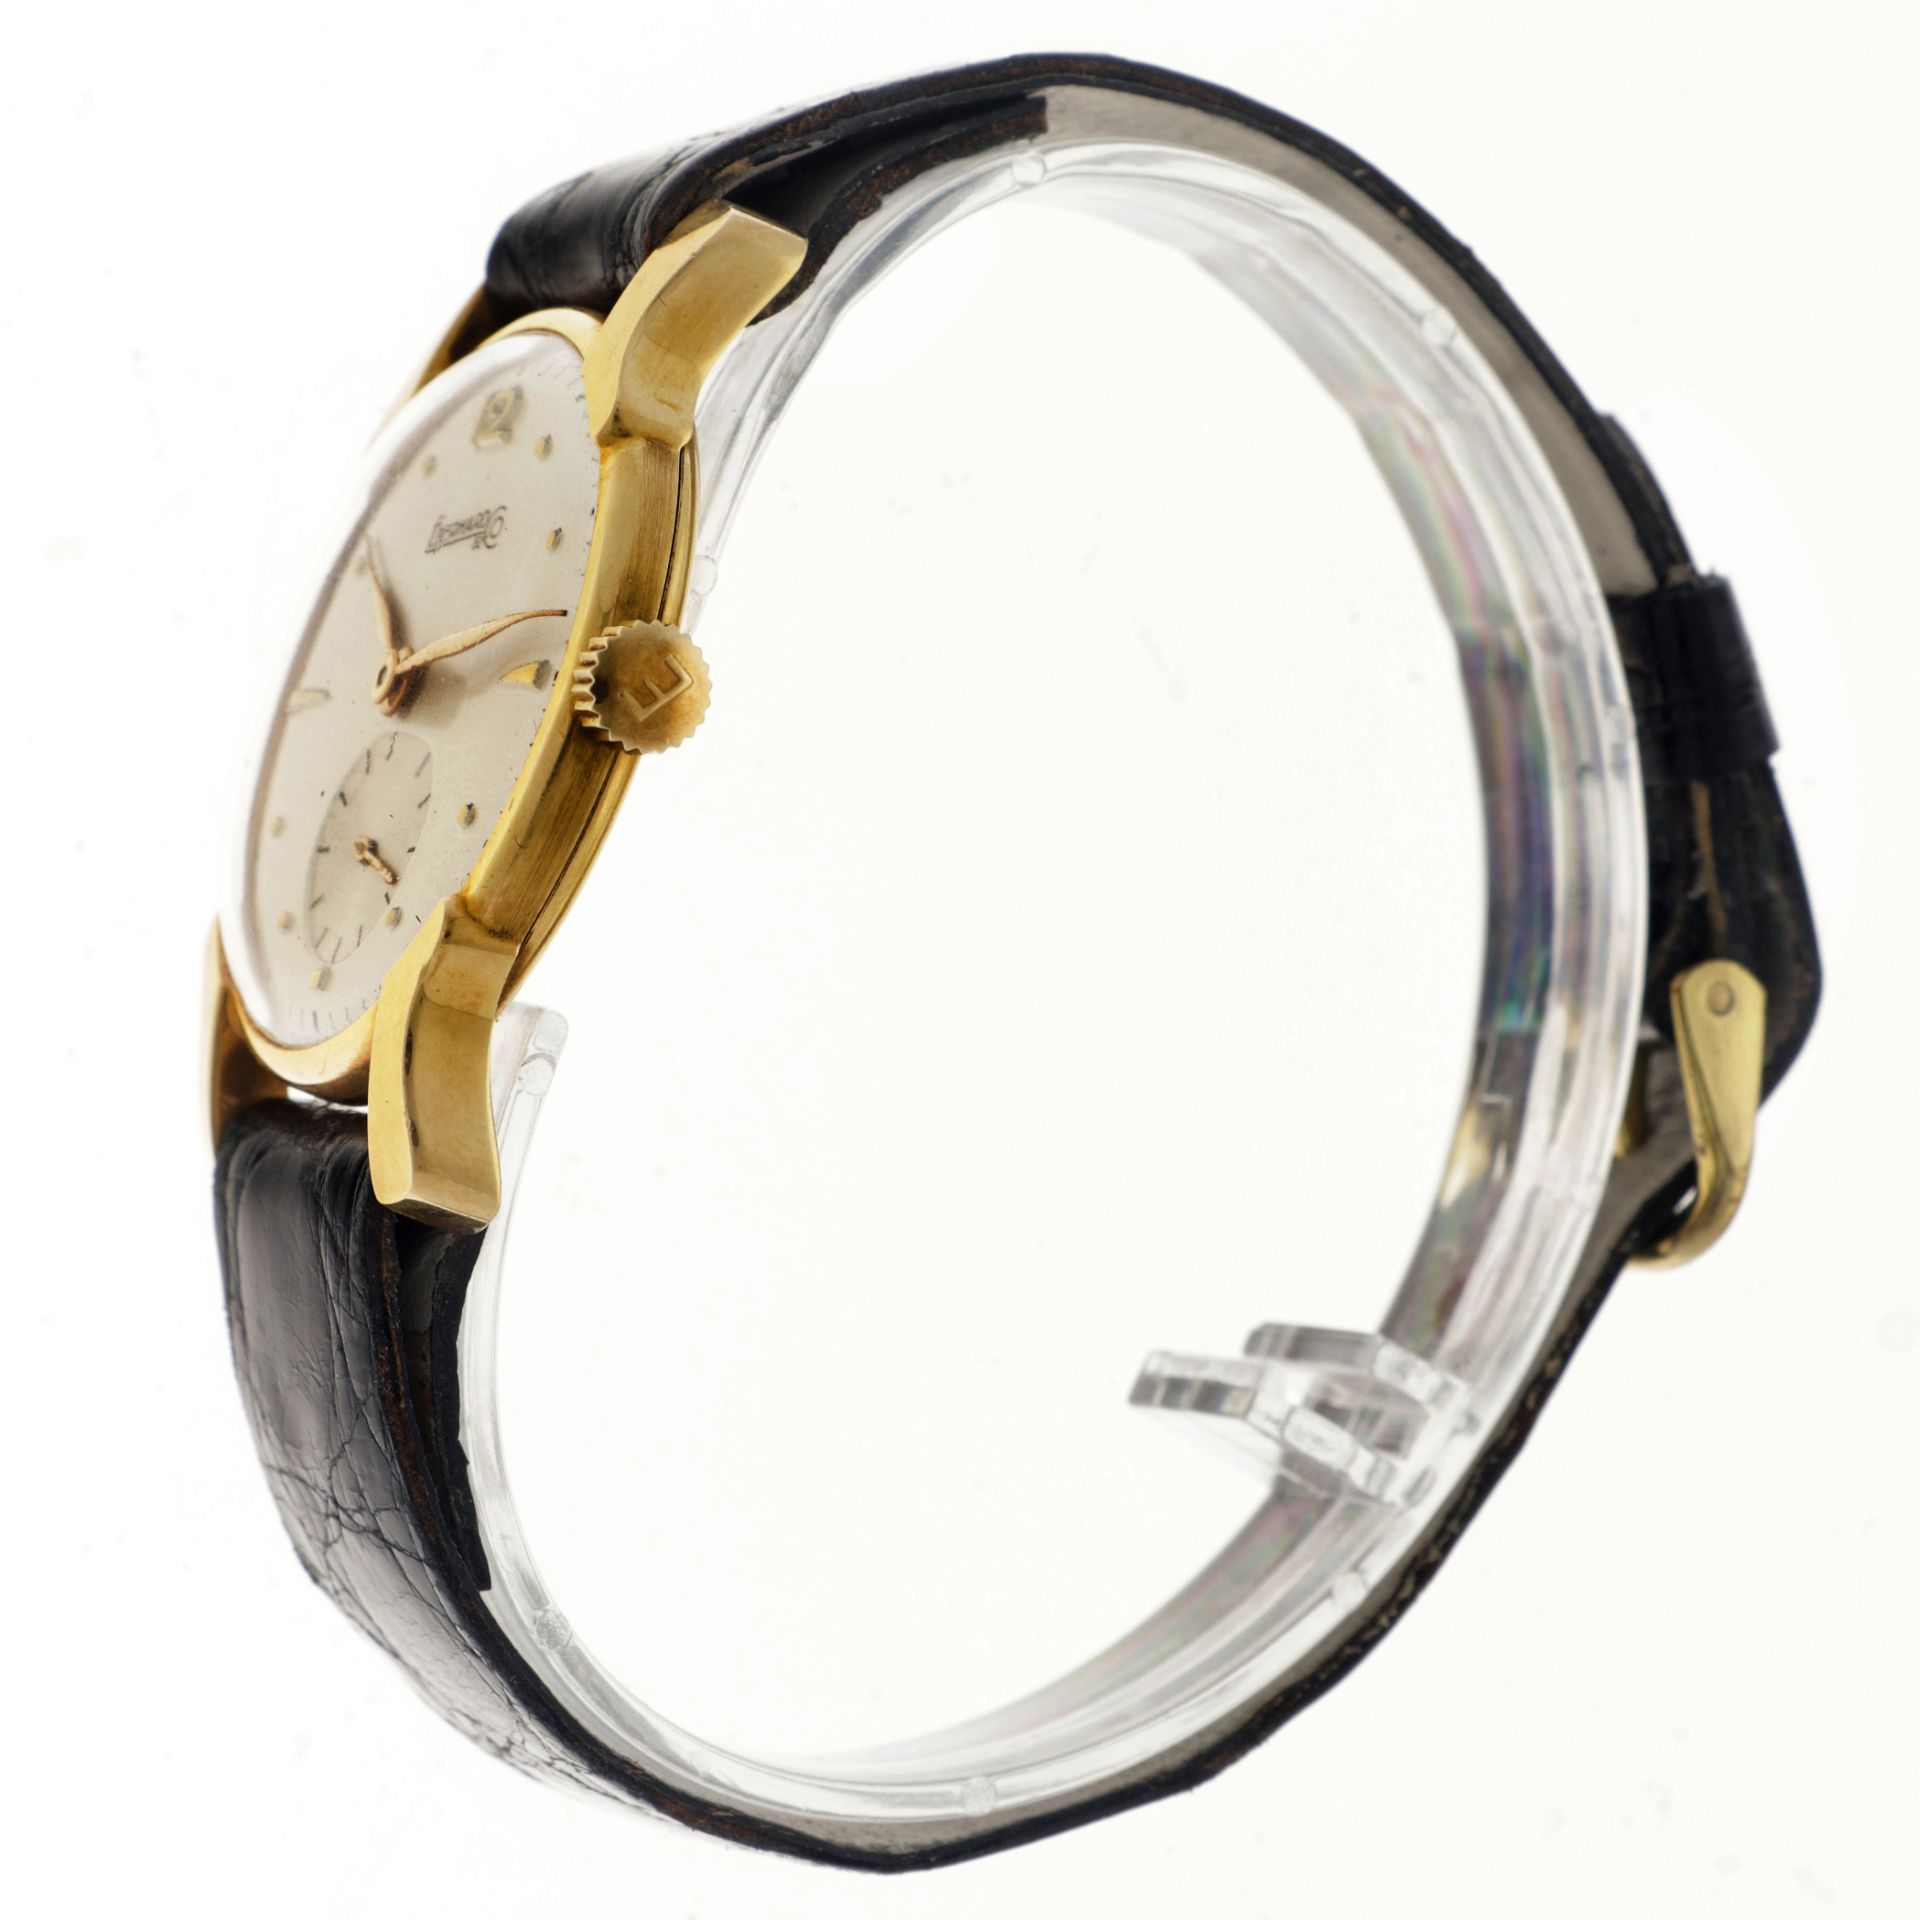 No Reserve -  Eberhard & Co. 18 K. 601446 18 - Men's watch. - Image 5 of 6